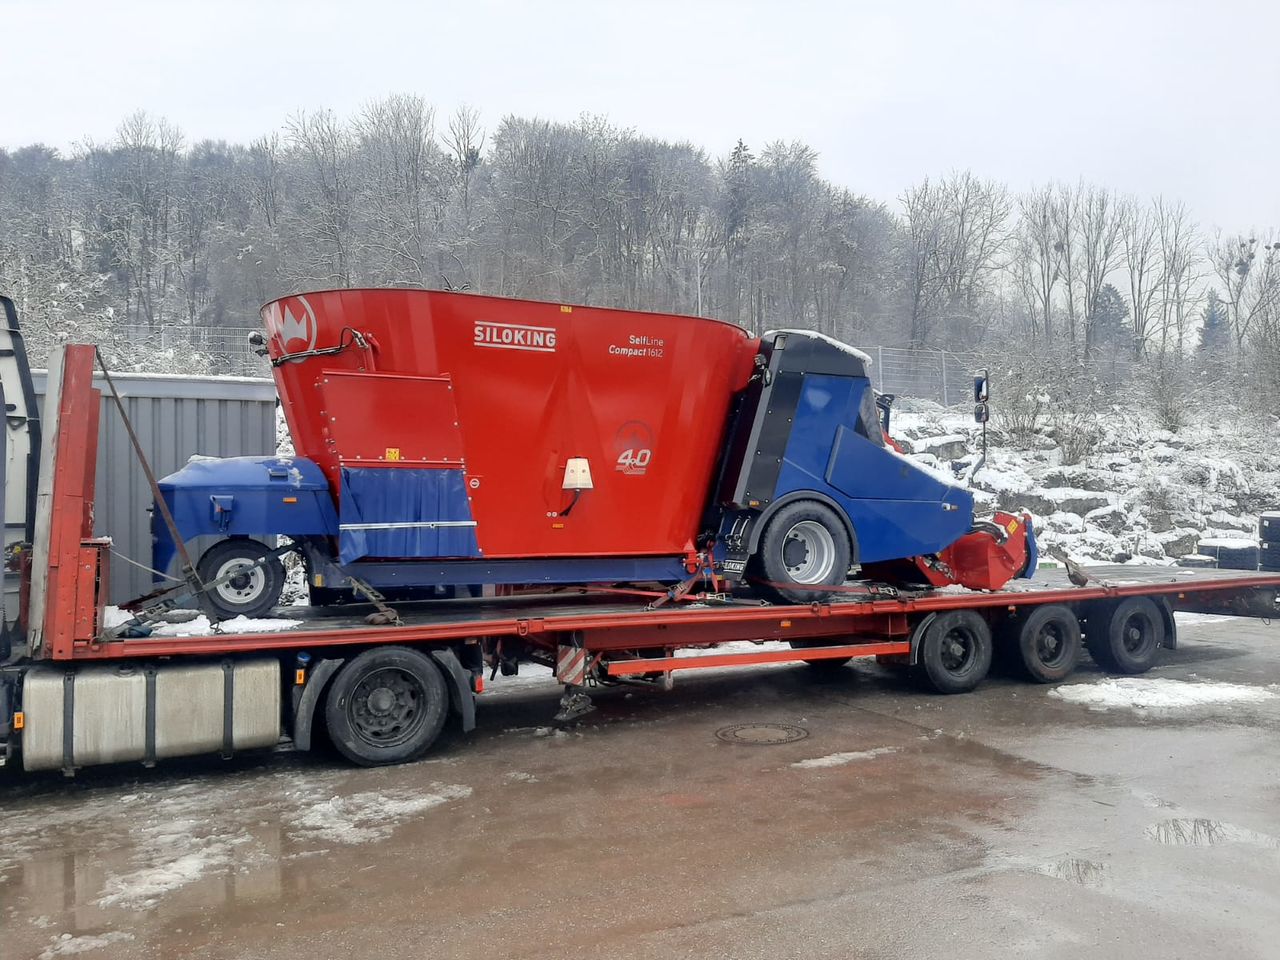 Перевозка оборудования на трале из Германии в Беларусь